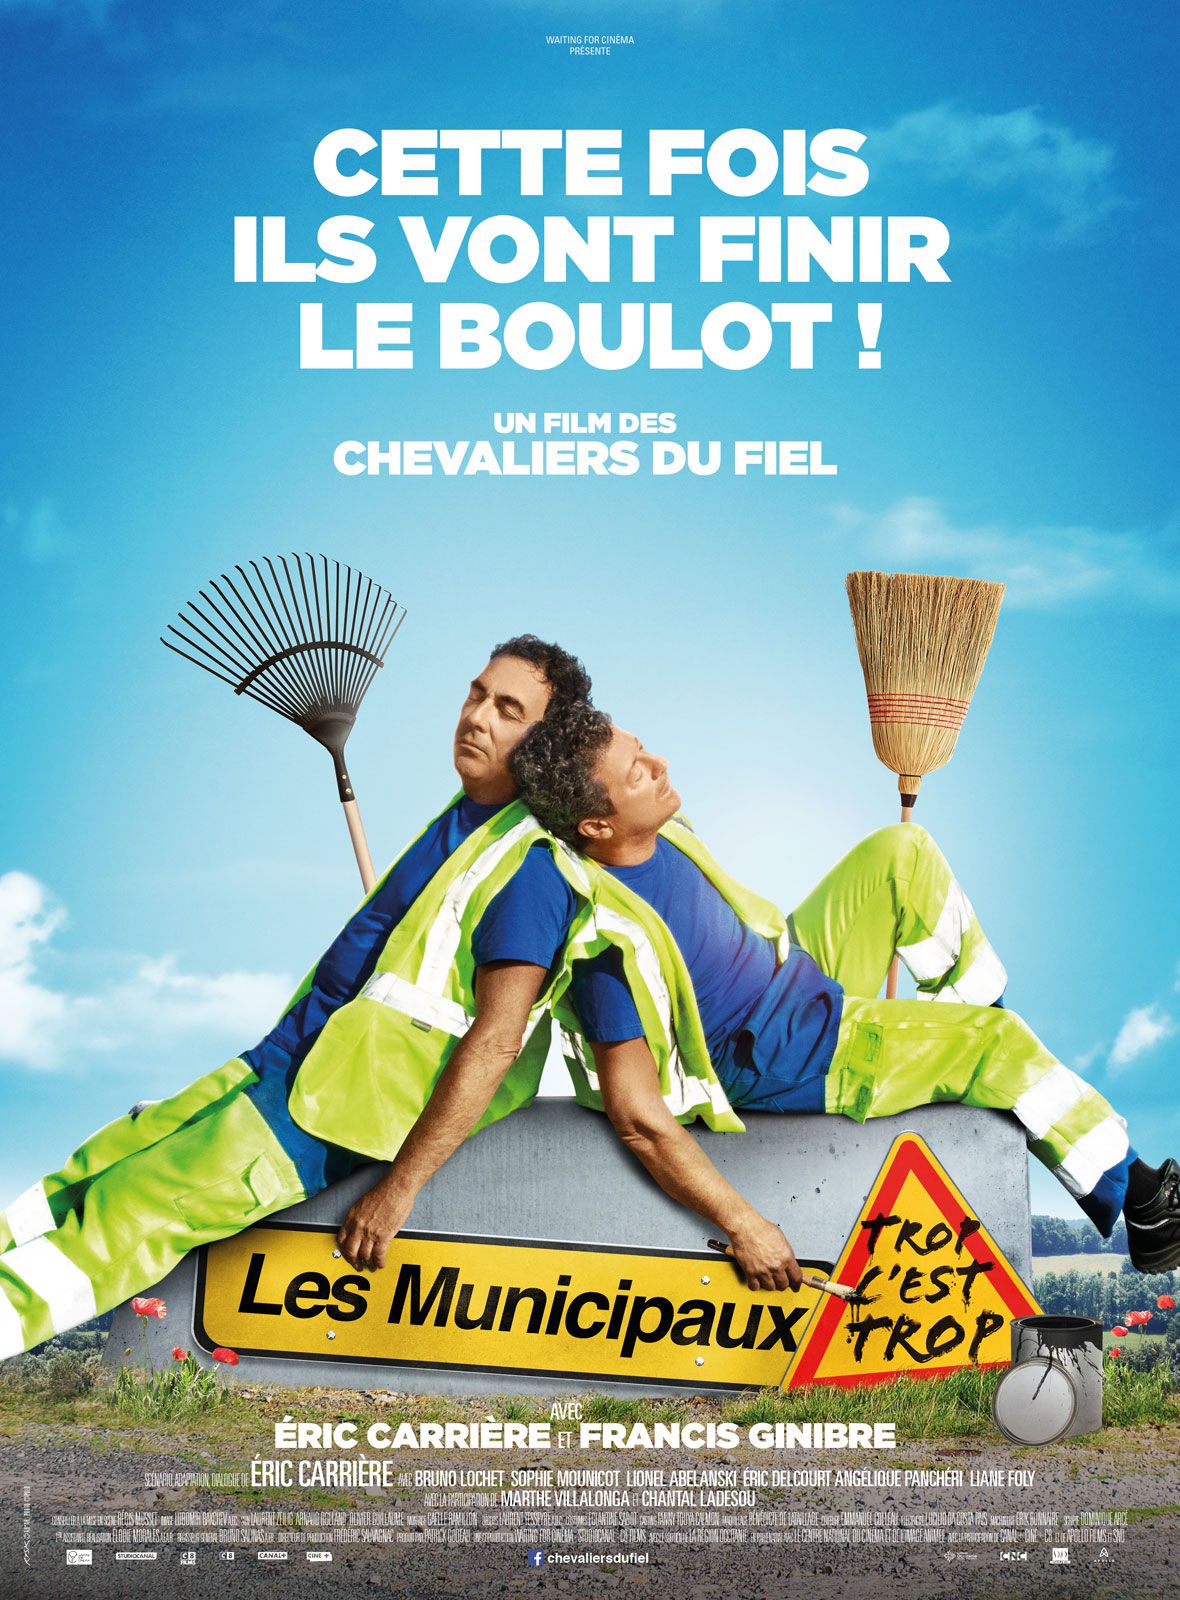 Les Municipaux, trop c'est trop ! - Film (2019) streaming VF gratuit complet